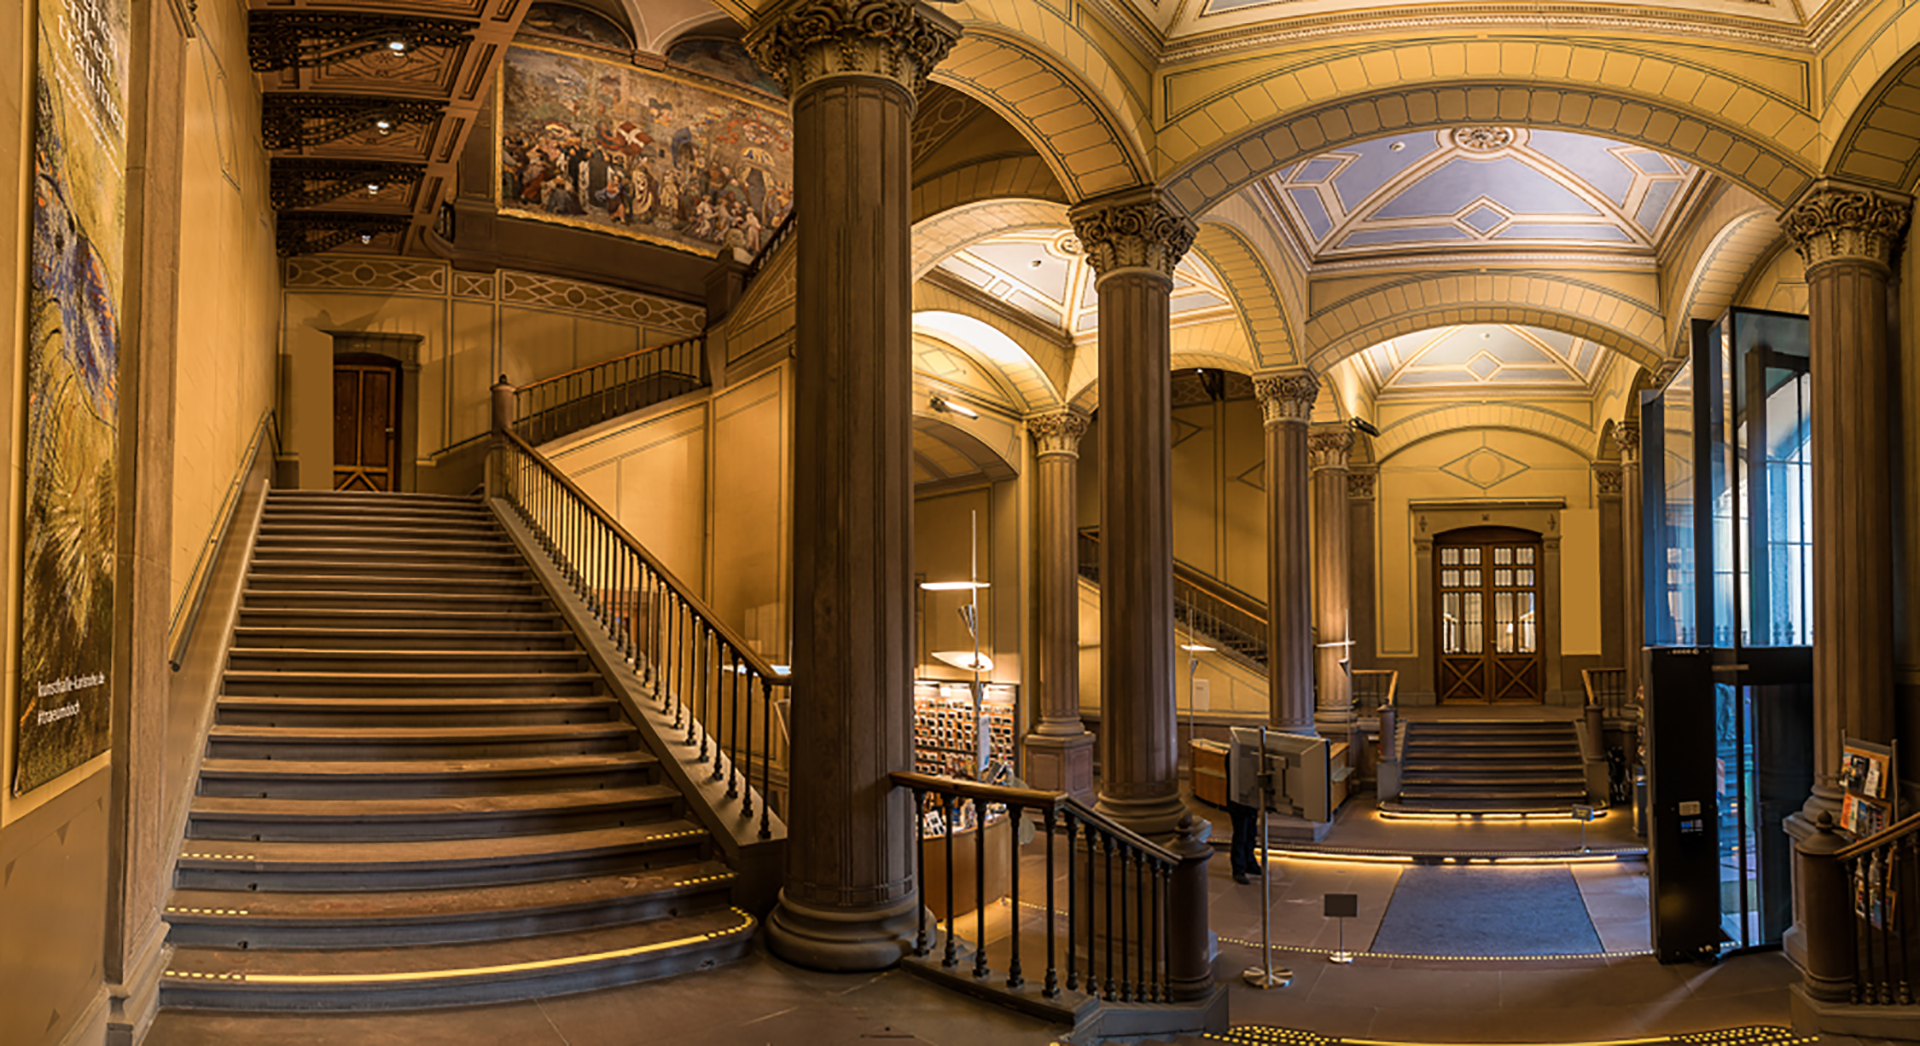 Blick in das Treppenhaus des Hauptgebäudes der Kunsthalle mit dem prächtigen Schwindt-Fresko und Deckenmalereien